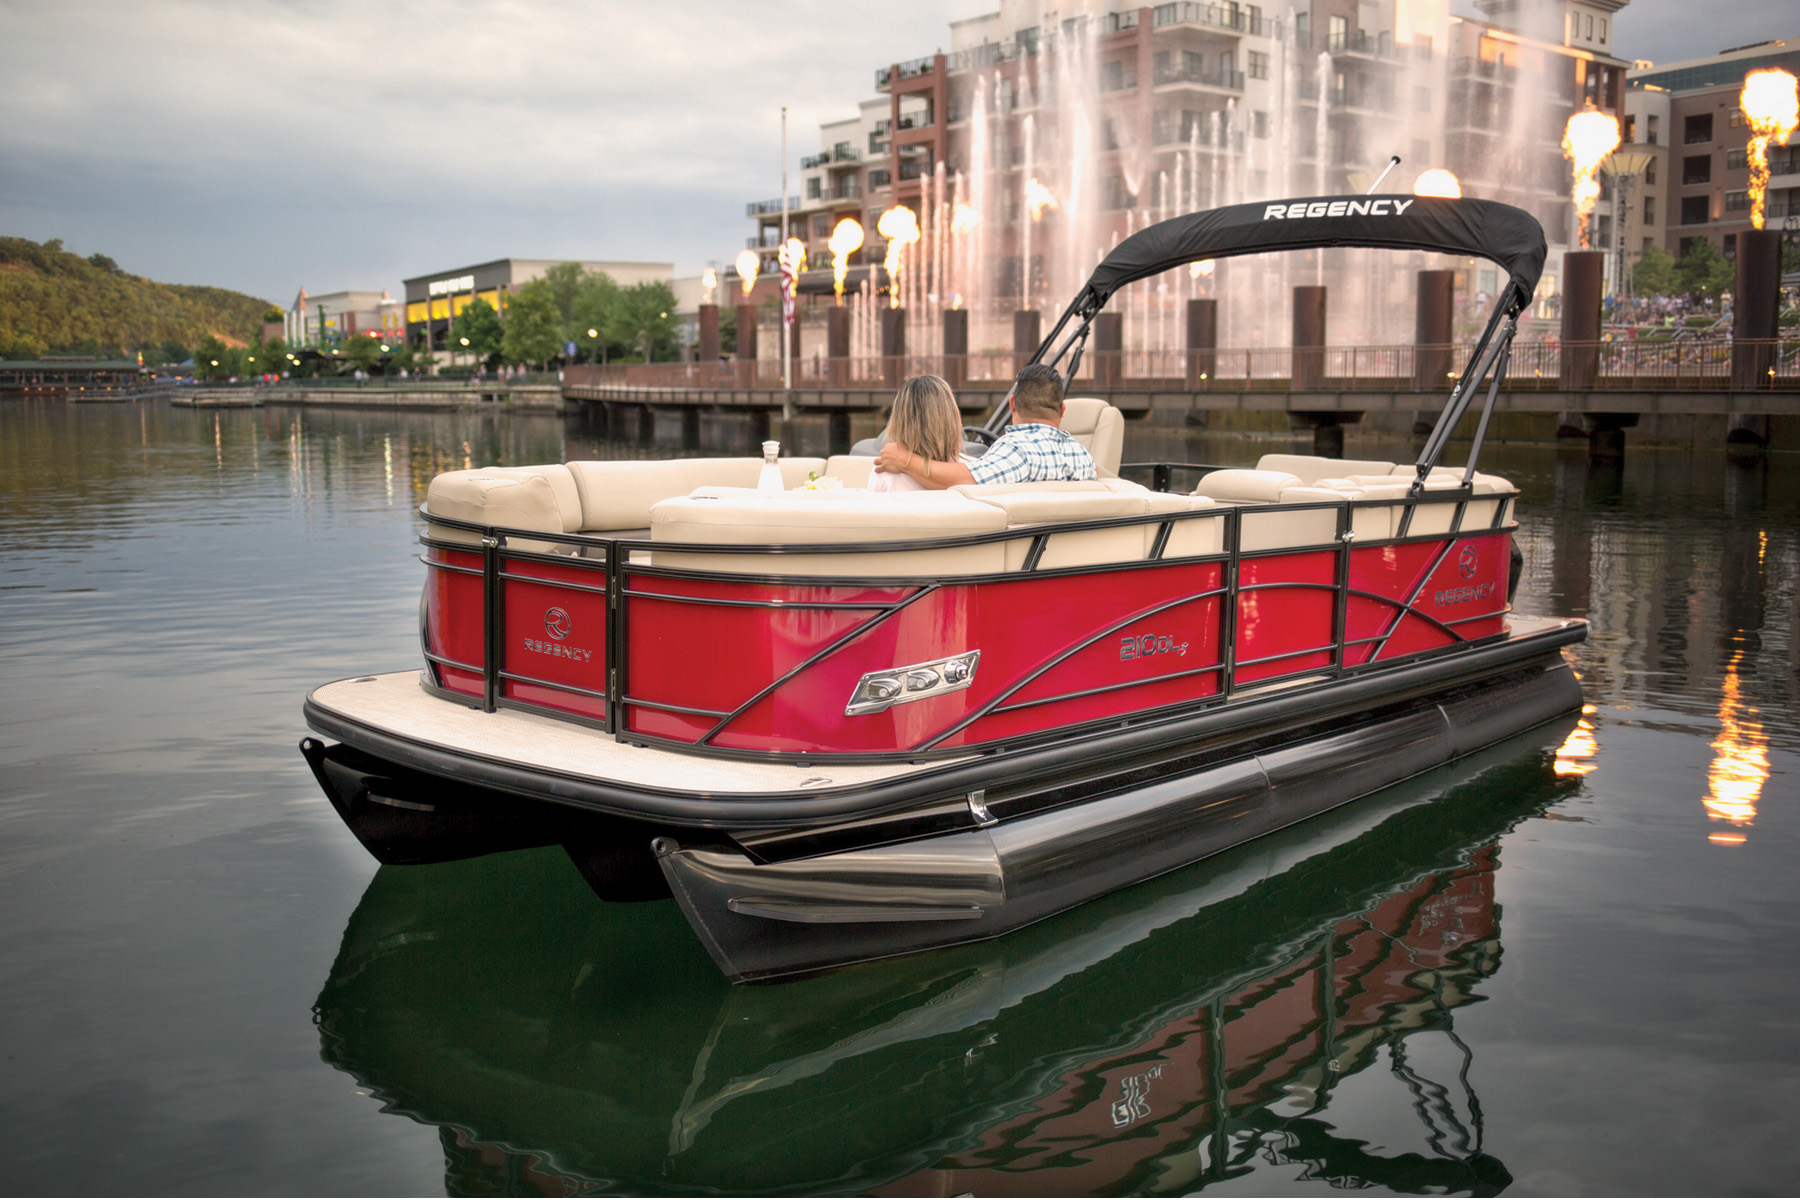 Regency Boat sitting in canal